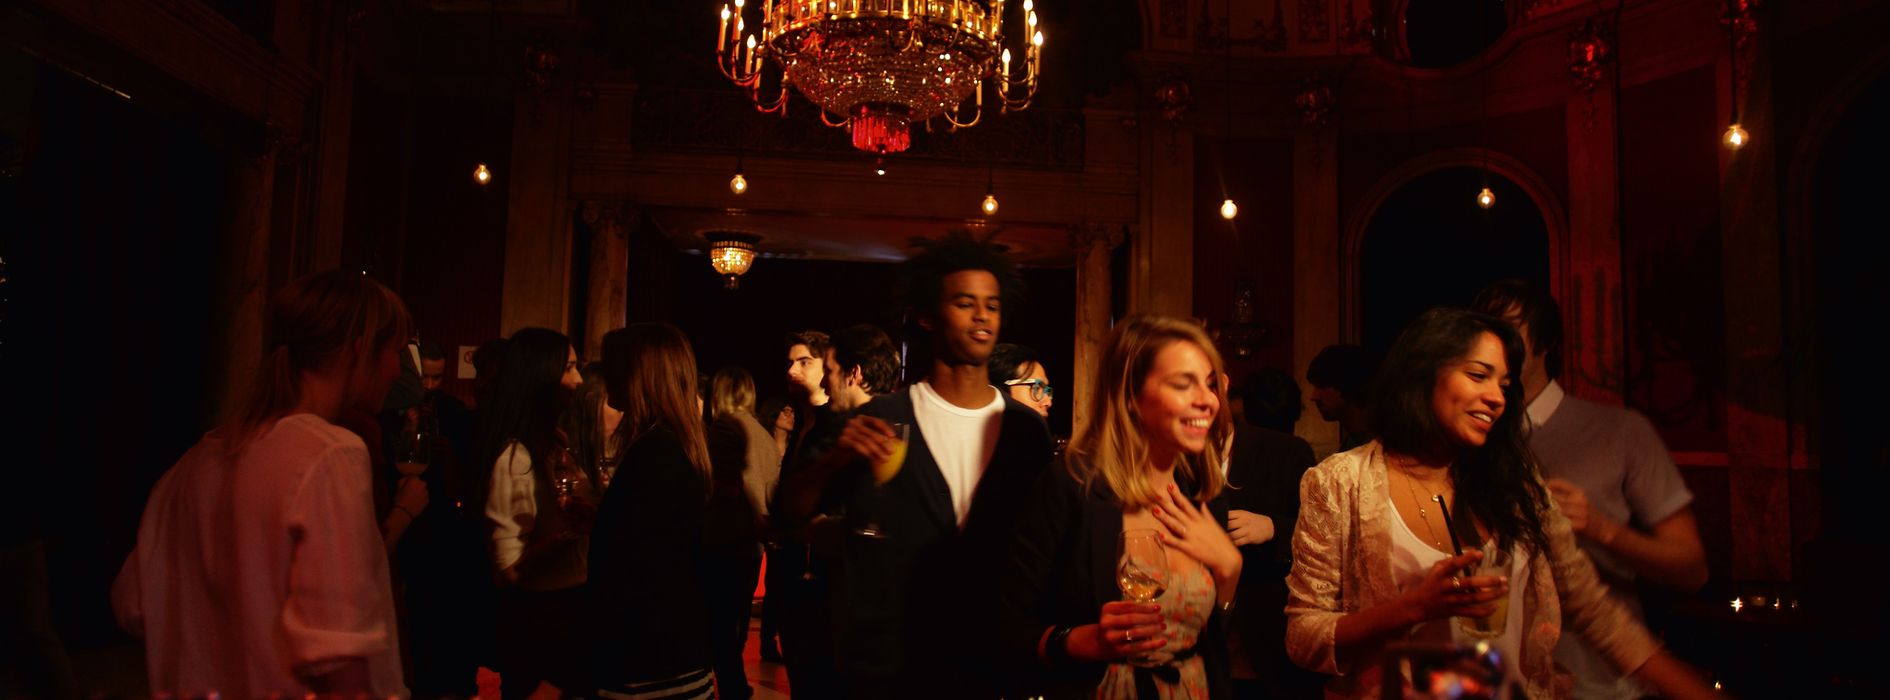 Gente bailando en el bar rojo del Volkstheater.